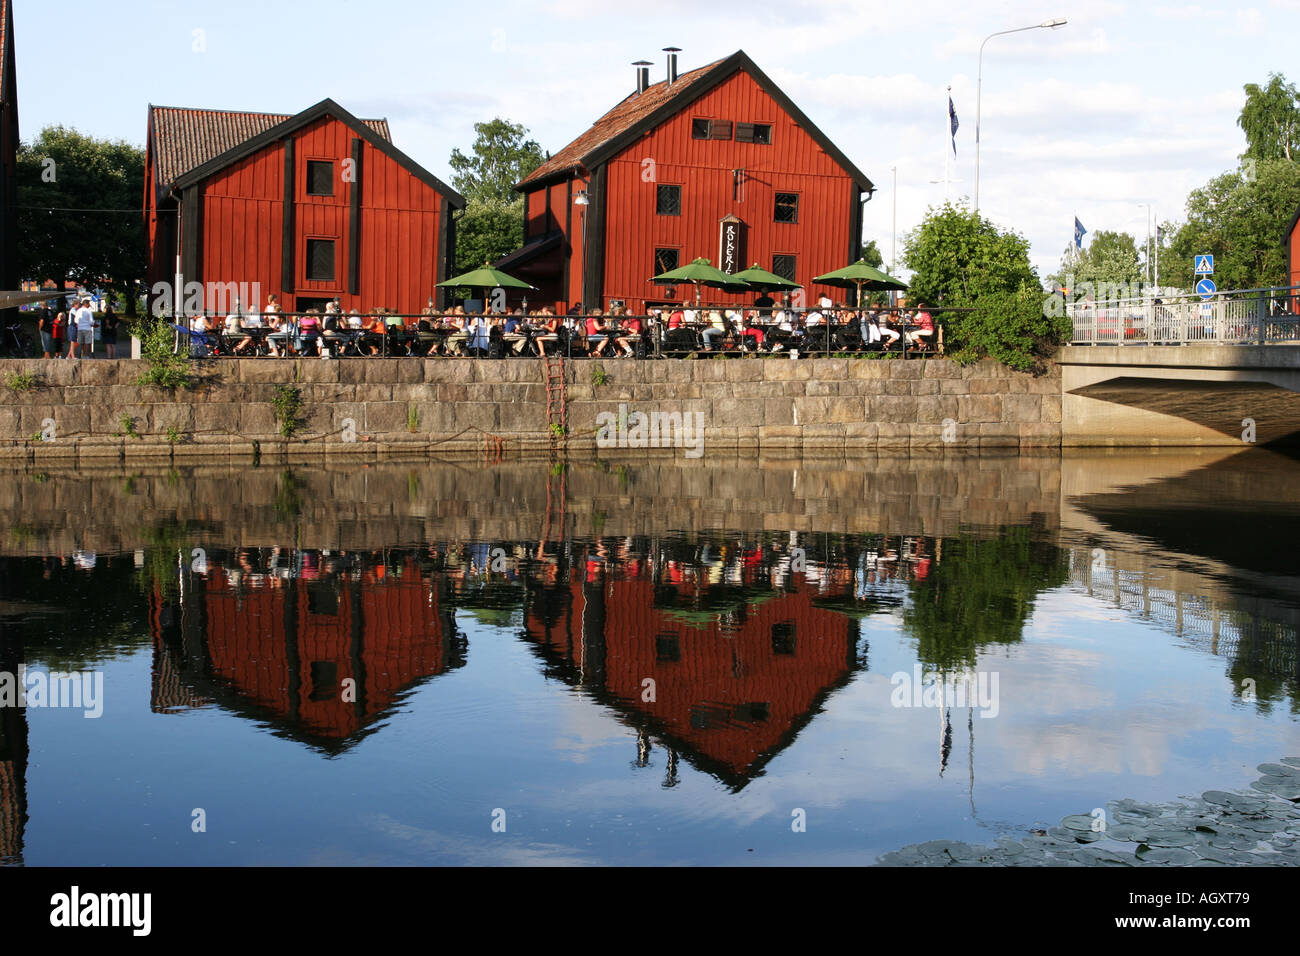 People at the restaurant Rökeriet, near the marina in Nyköping, Sweden  Stock Photo - Alamy